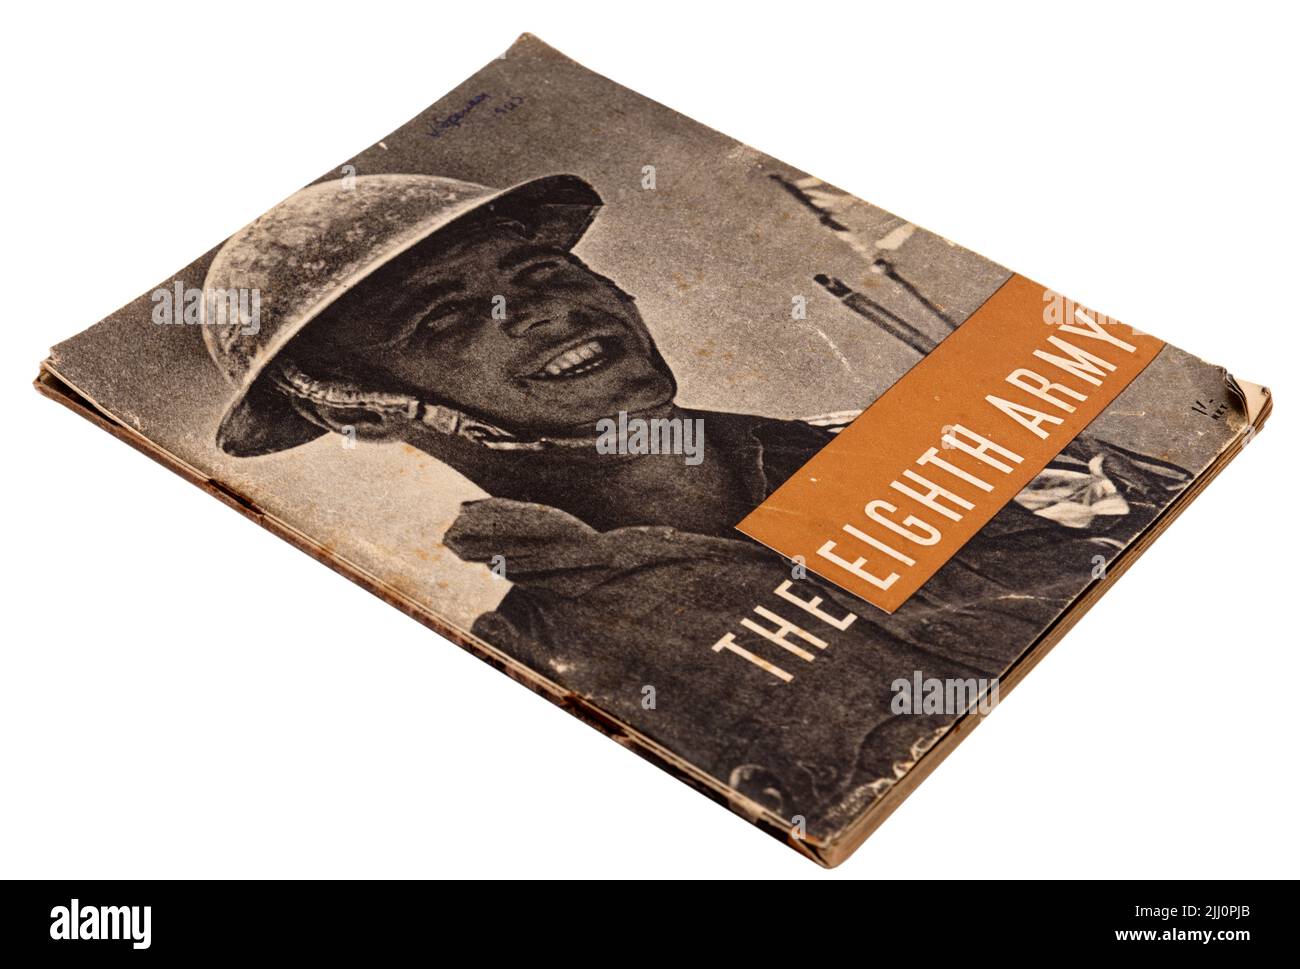 Un livre de WW2 célébrant la huitième armée, publié après la défaite de Rommell en Afrique du Nord Banque D'Images